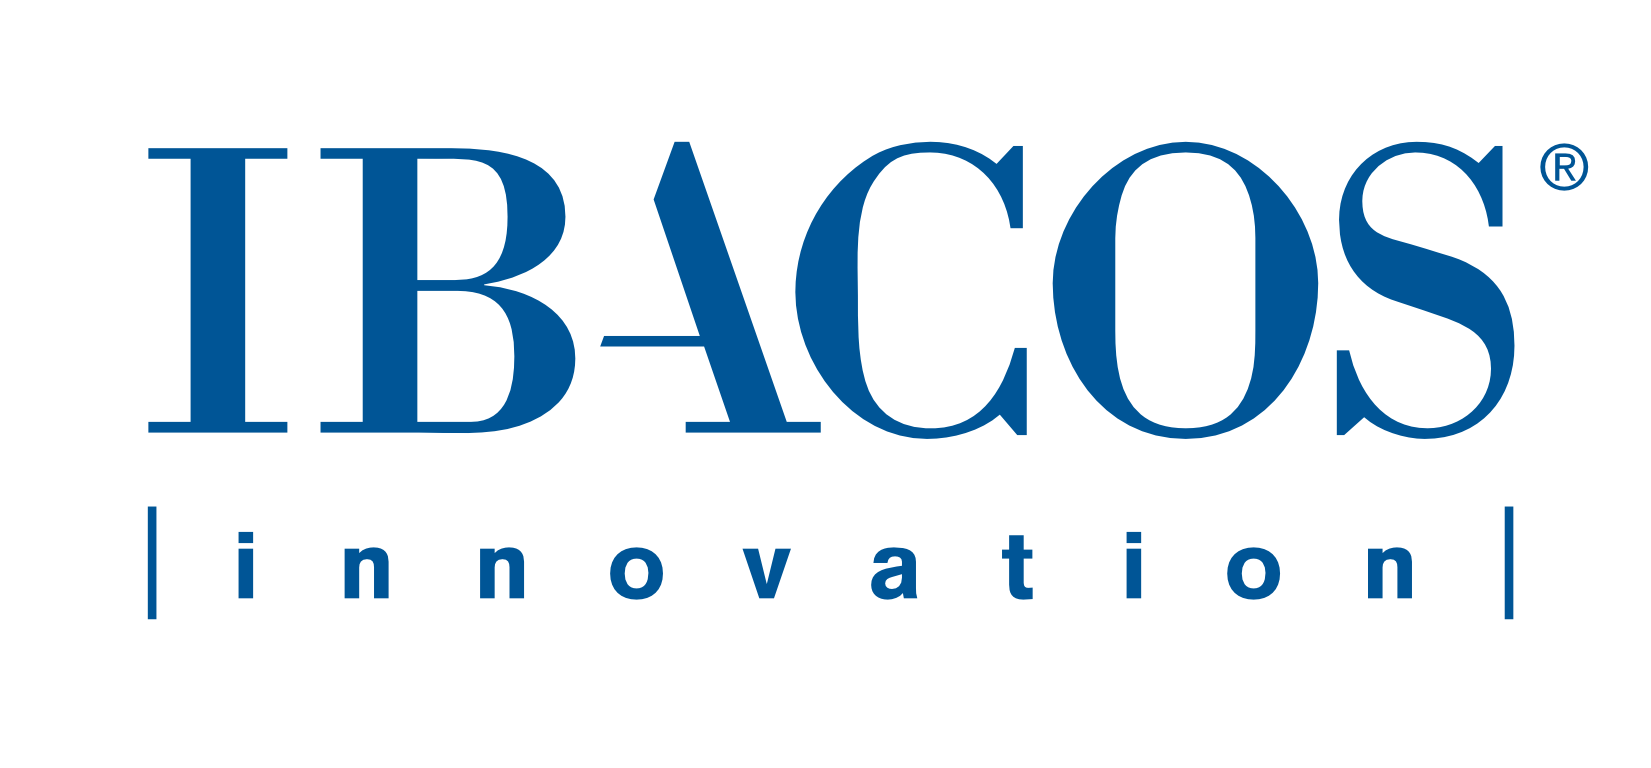 IBACOS company logo